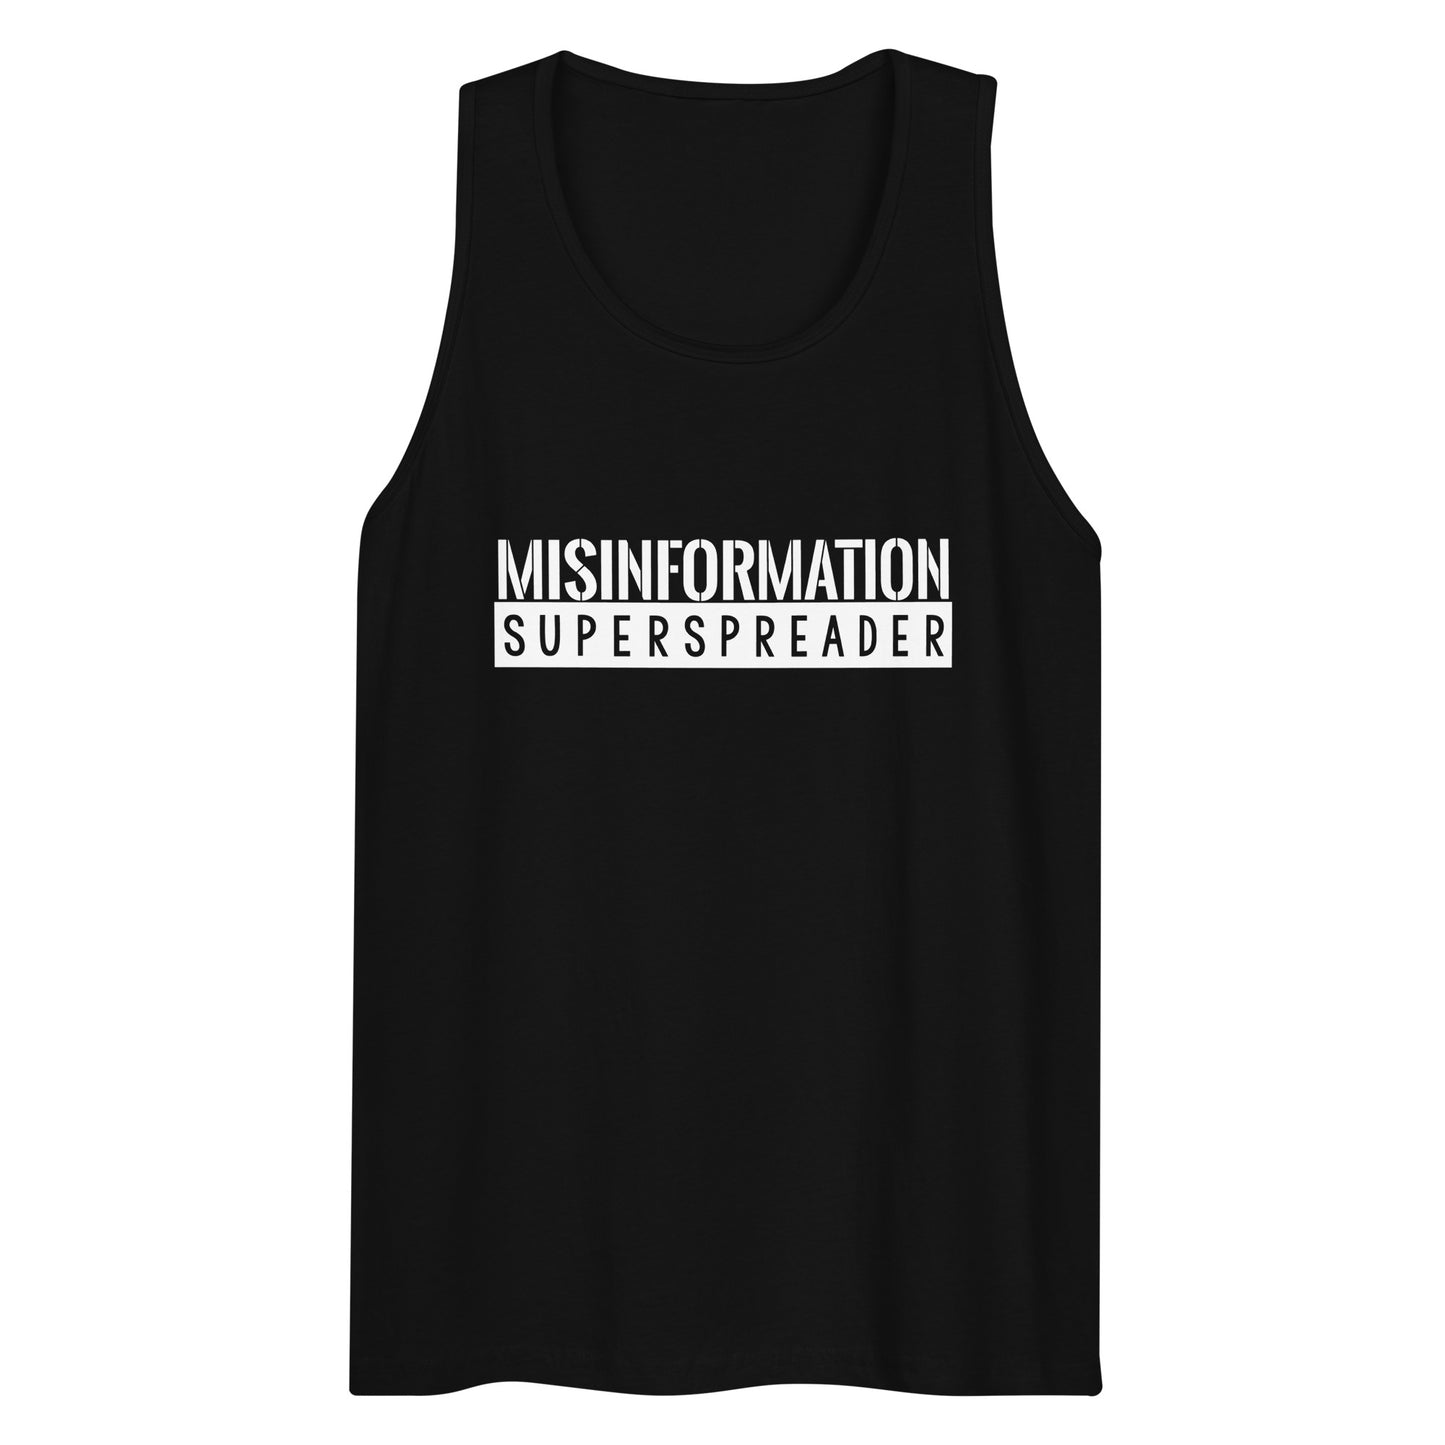 Misinformation Superspreader Men’s premium tank top